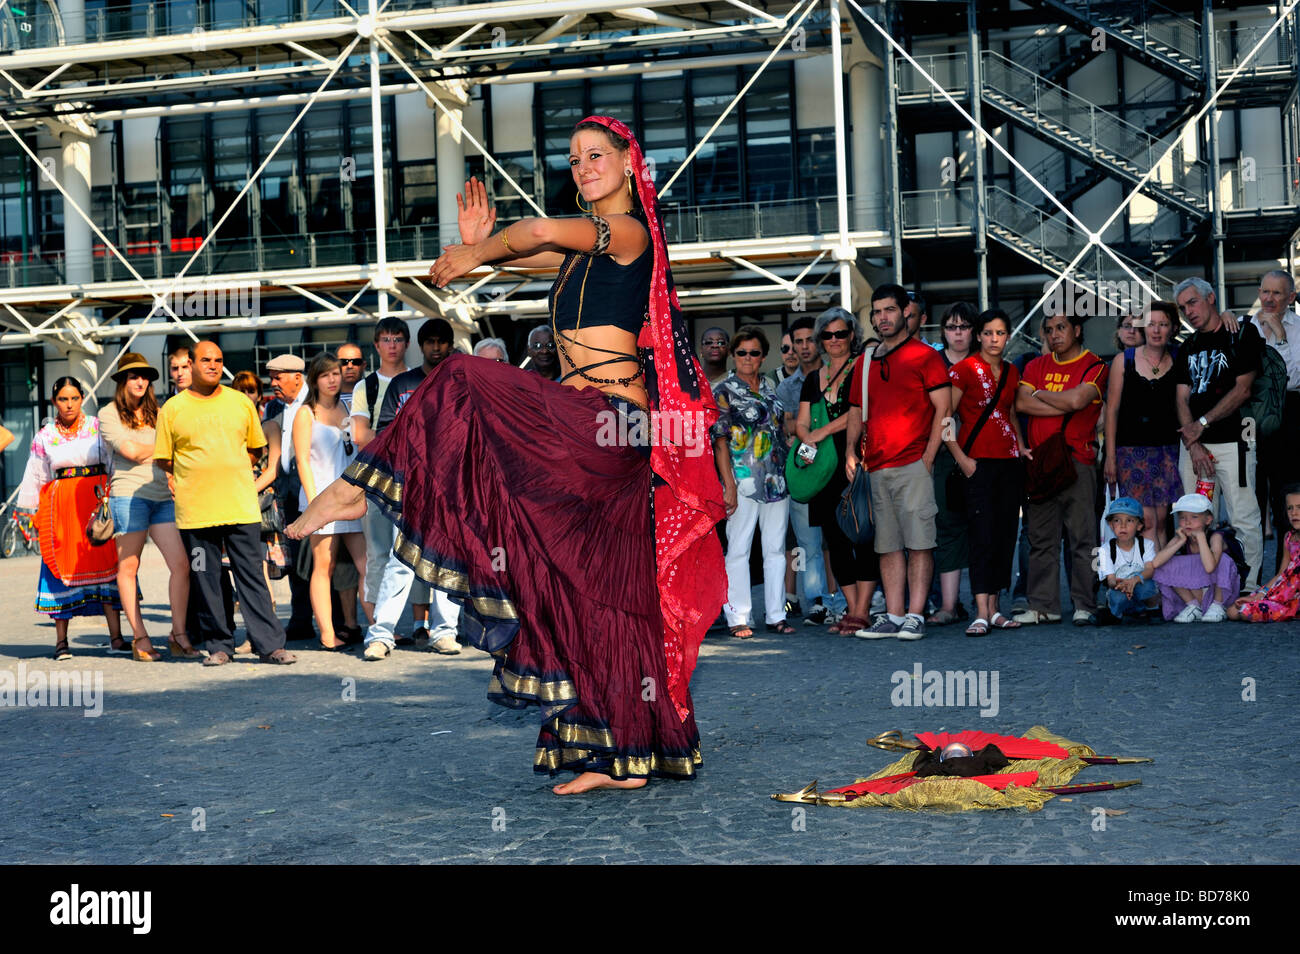 Paris France, touristes à la recherche de la danseuse indienne féminine 'Street Performer' à l'extérieur du 'Musée George Pompidou' Beaubourg, audience Banque D'Images